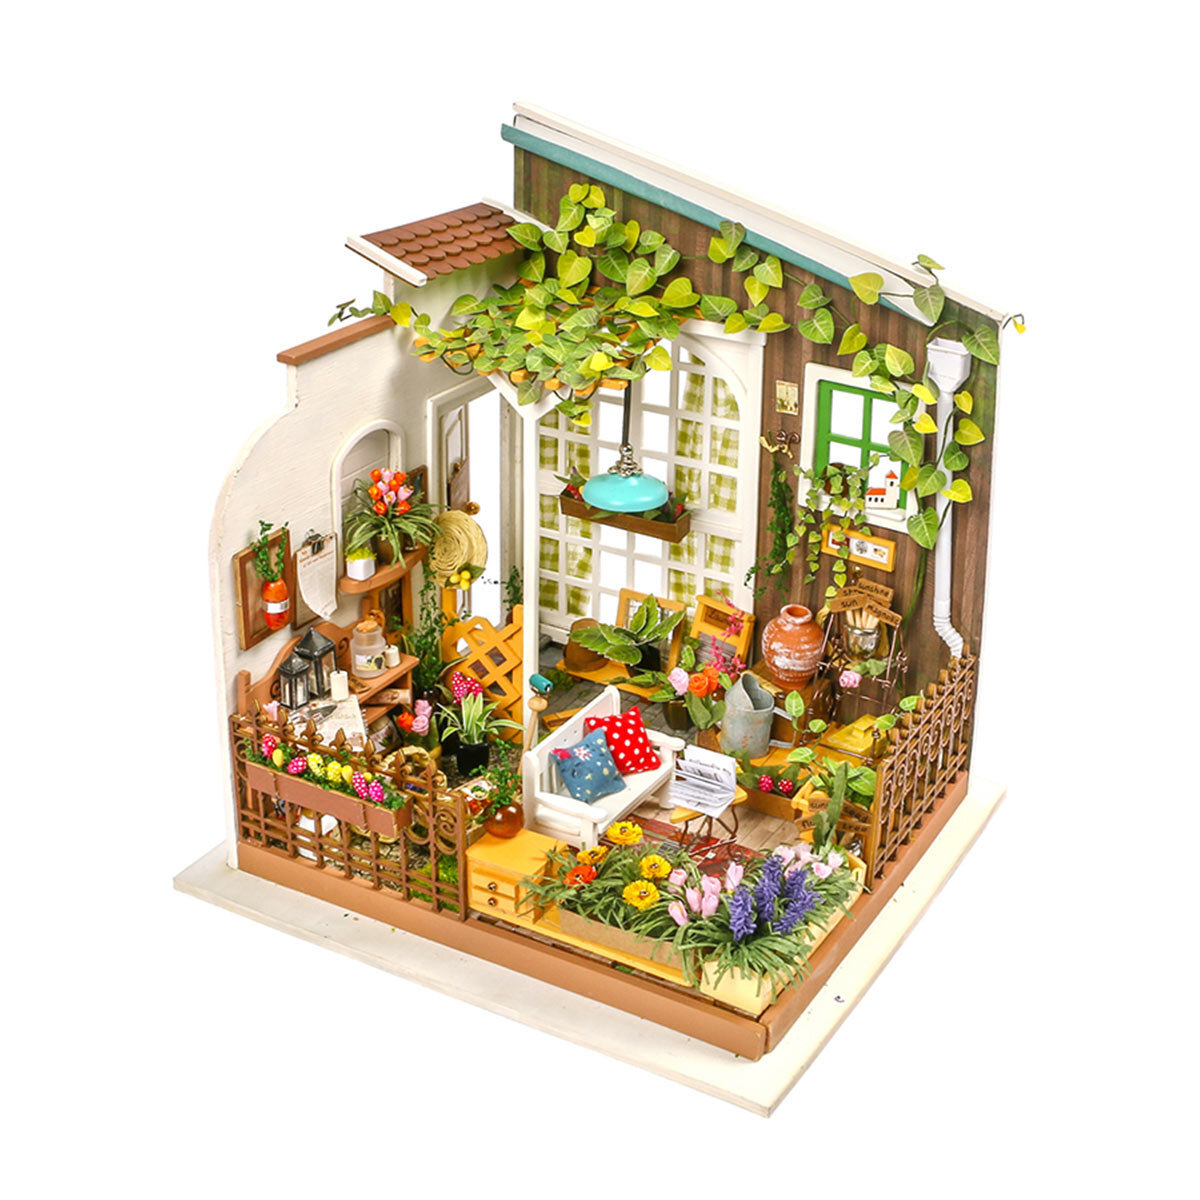 Miniaturhaus - Mr. Miller's Garden Rolife DG108